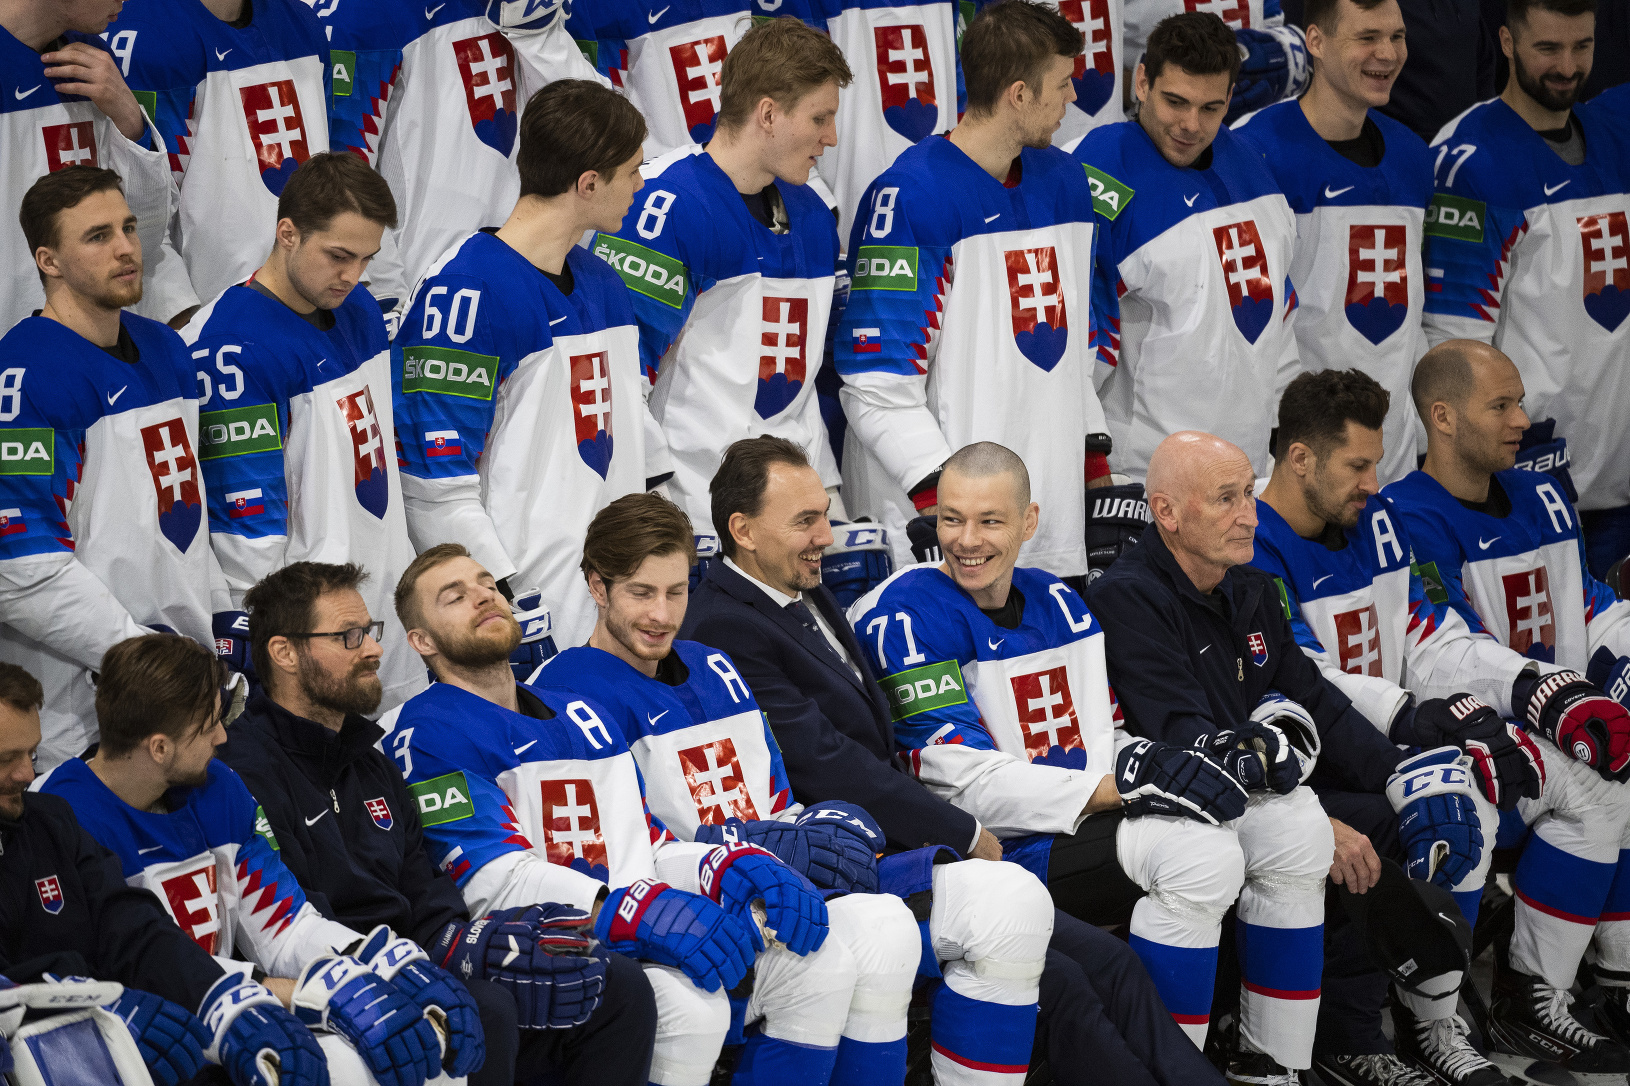 Spoločné fotenie slovenskej hokejovej